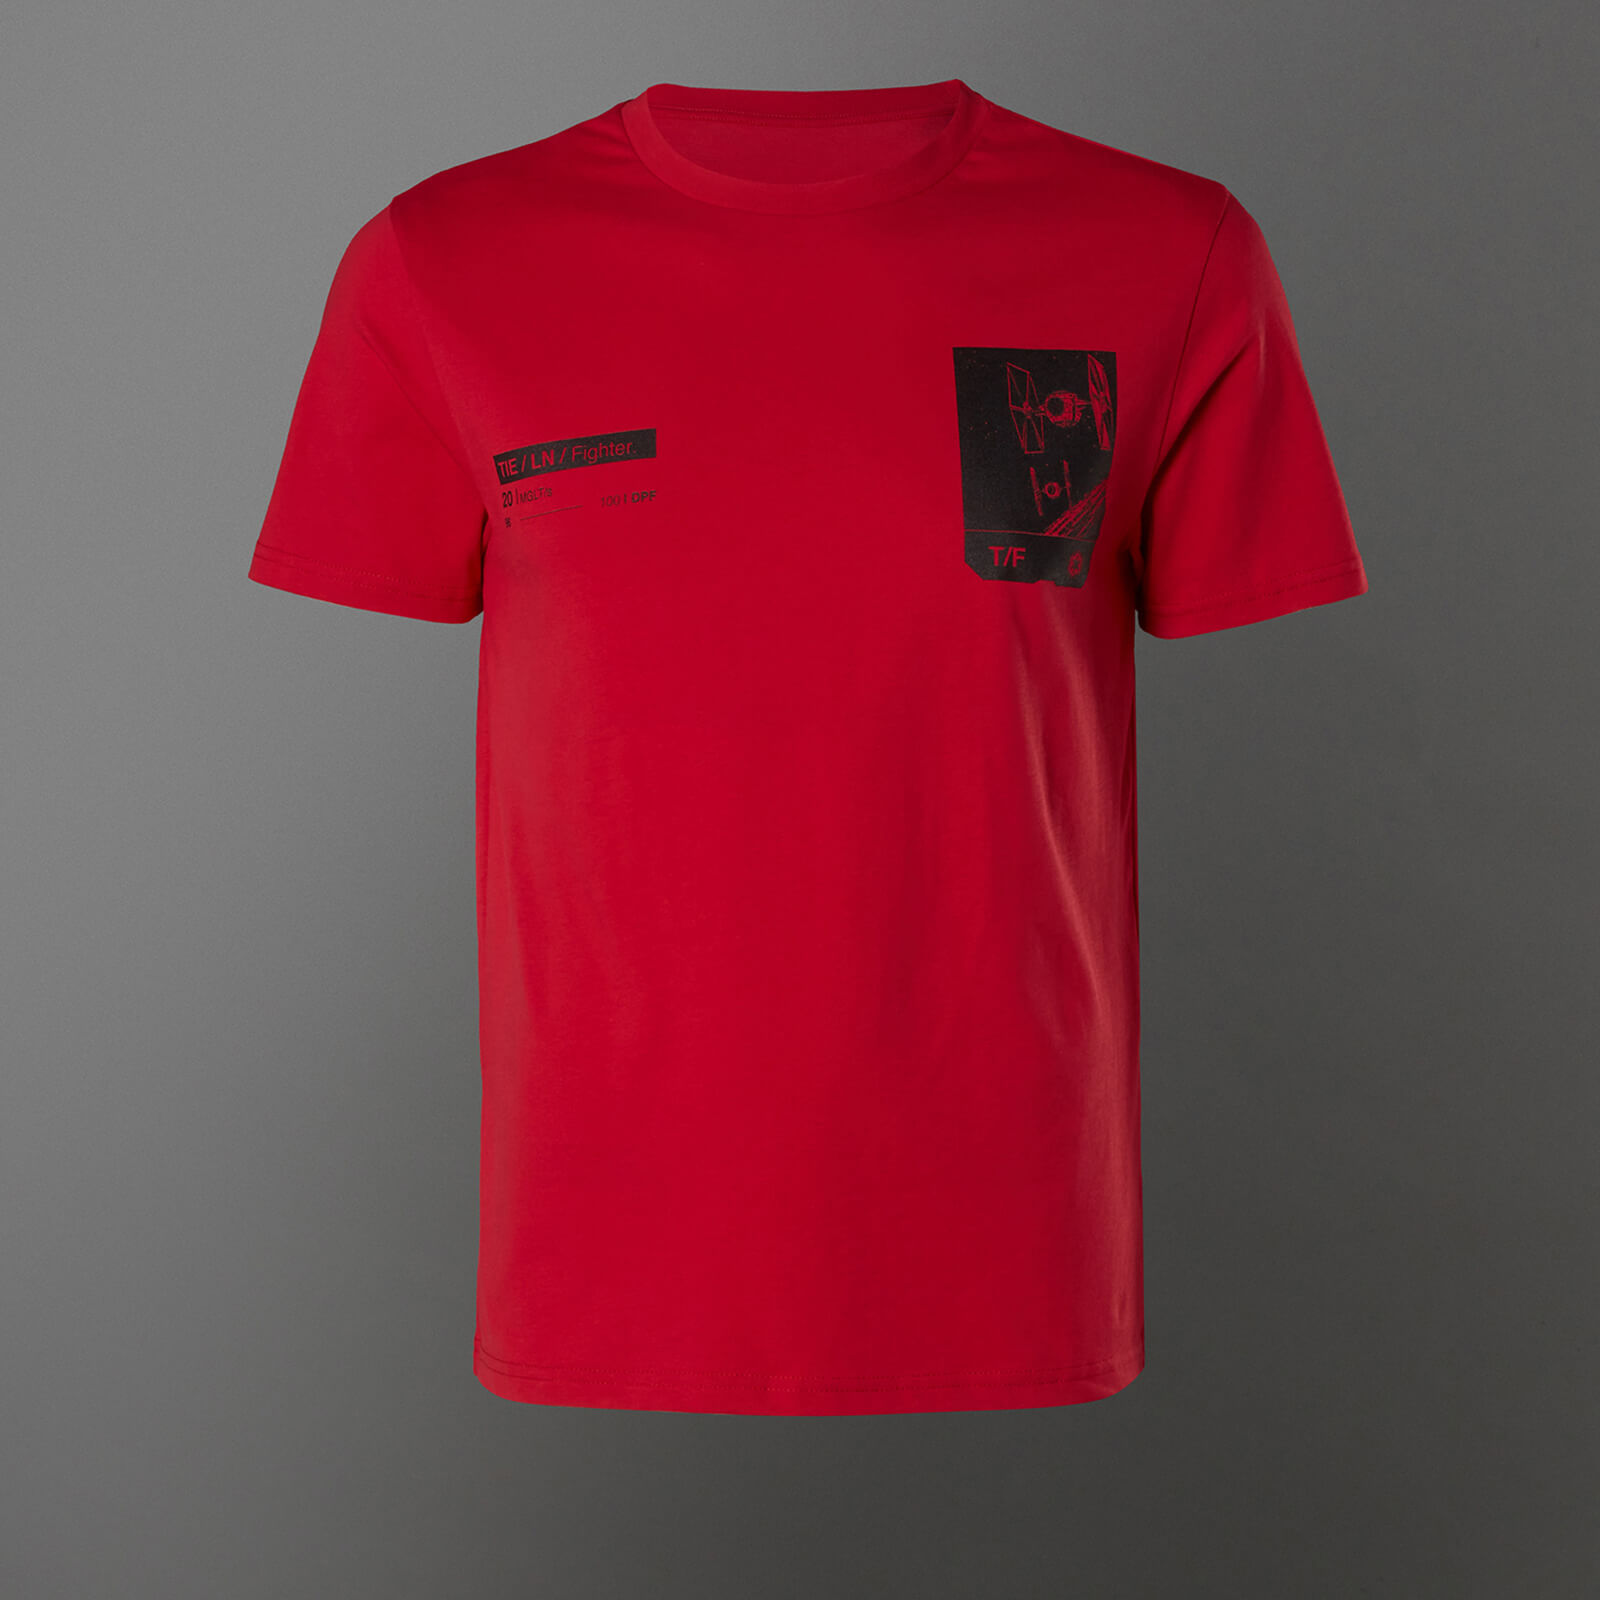 Star Wars Tie Fighter Unisex T-Shirt - Red - XS - Red